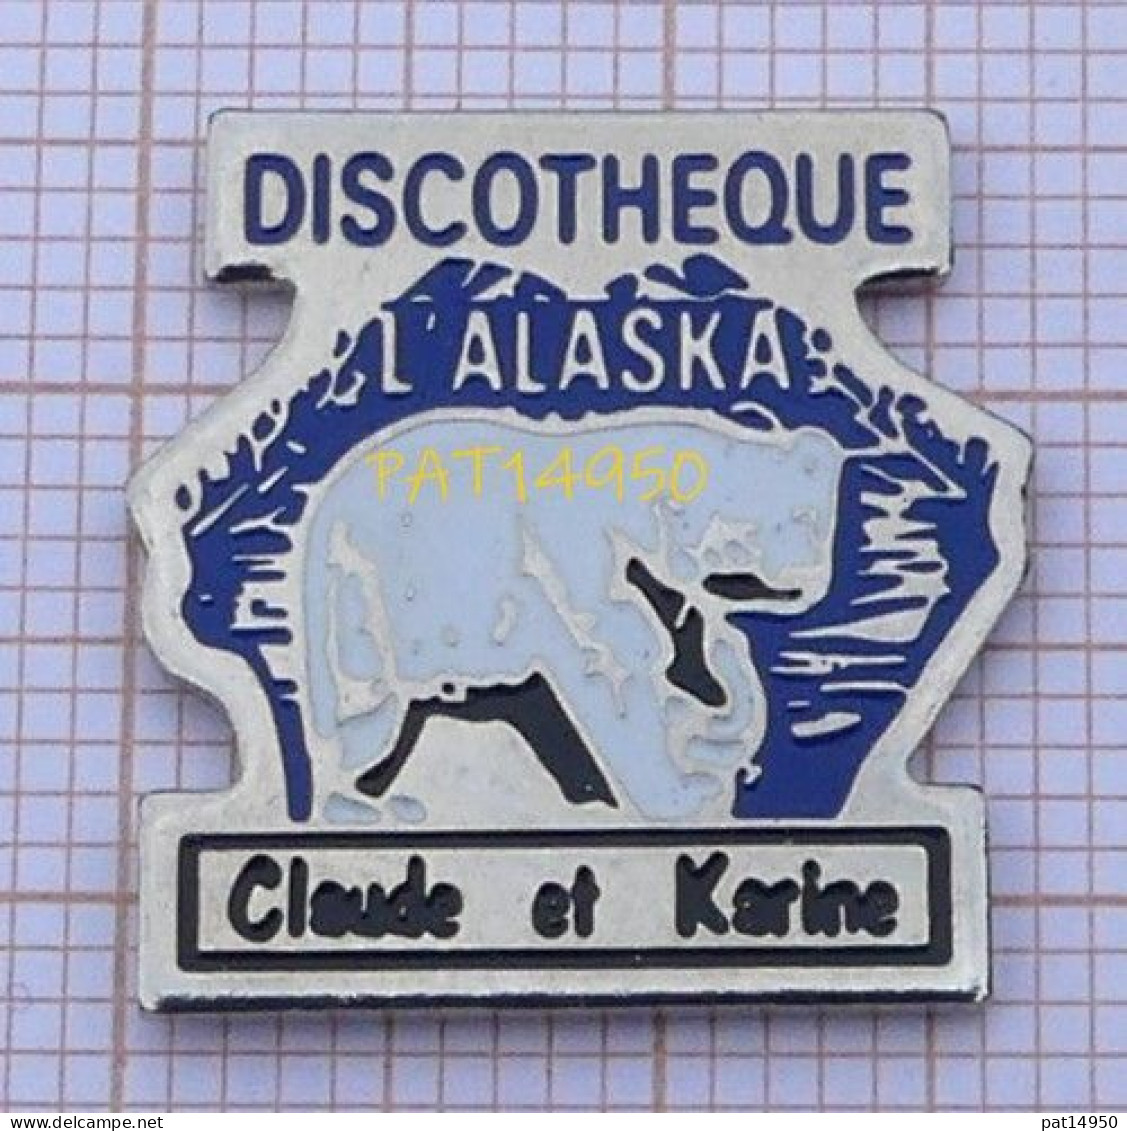 PAT14950  DISCOTHEQUE L'ALASKA Claude Et Karine CLUB BOITE DE NUIT OURS BLANC - Musique